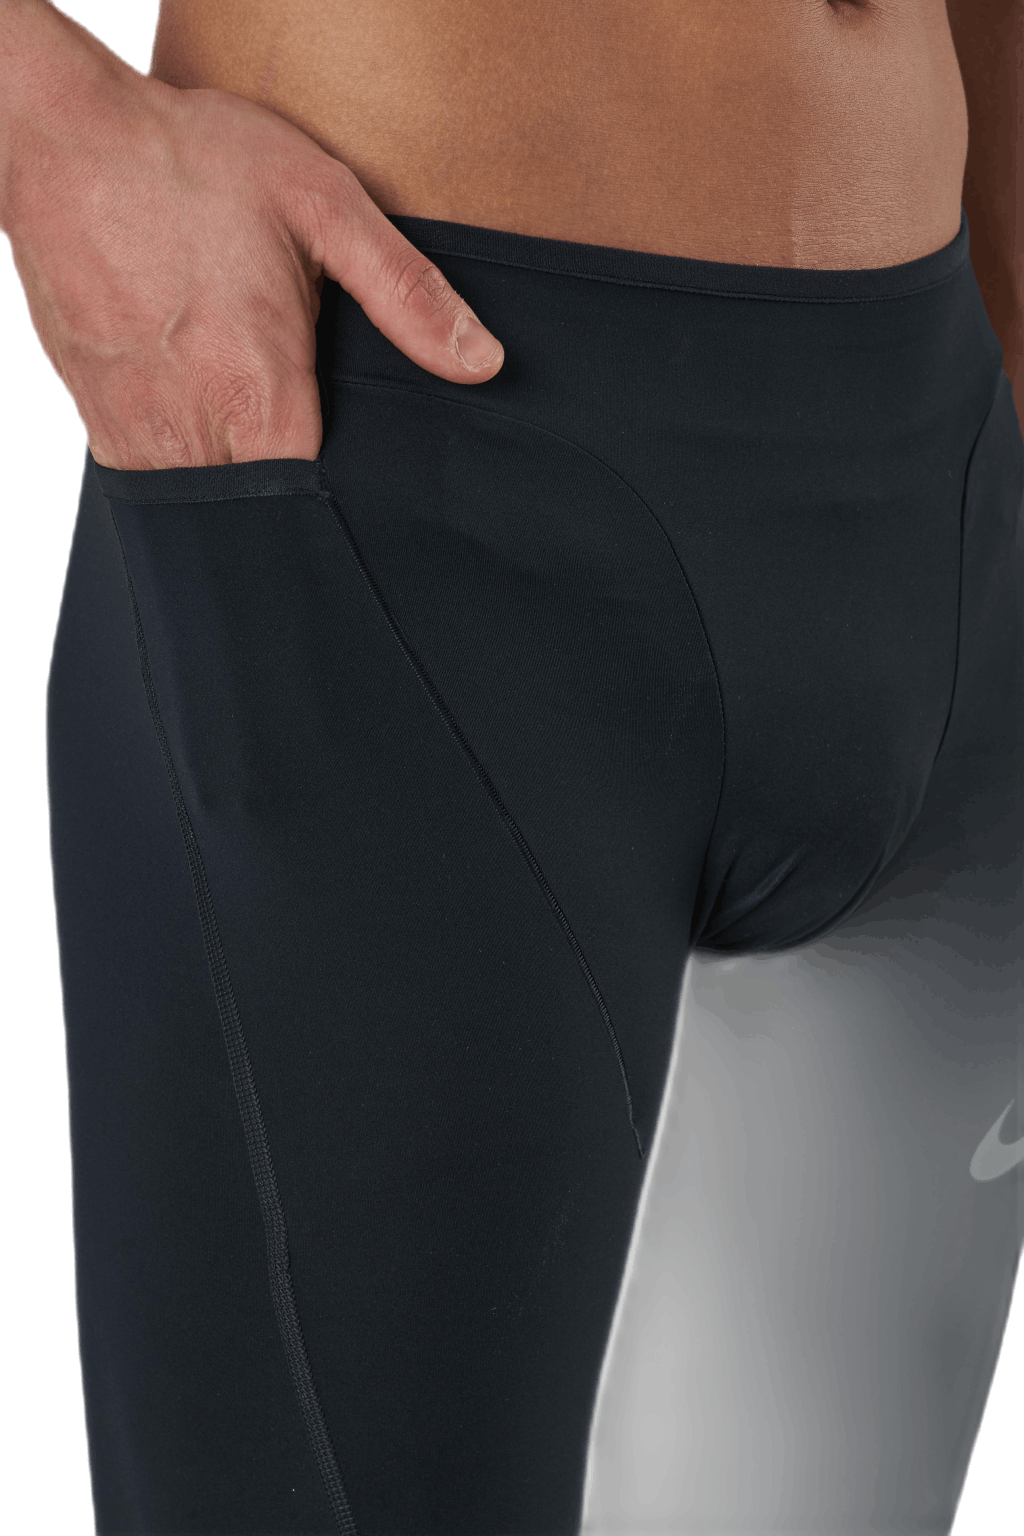 Nike Pro Base Layer Shorts Black/Grey